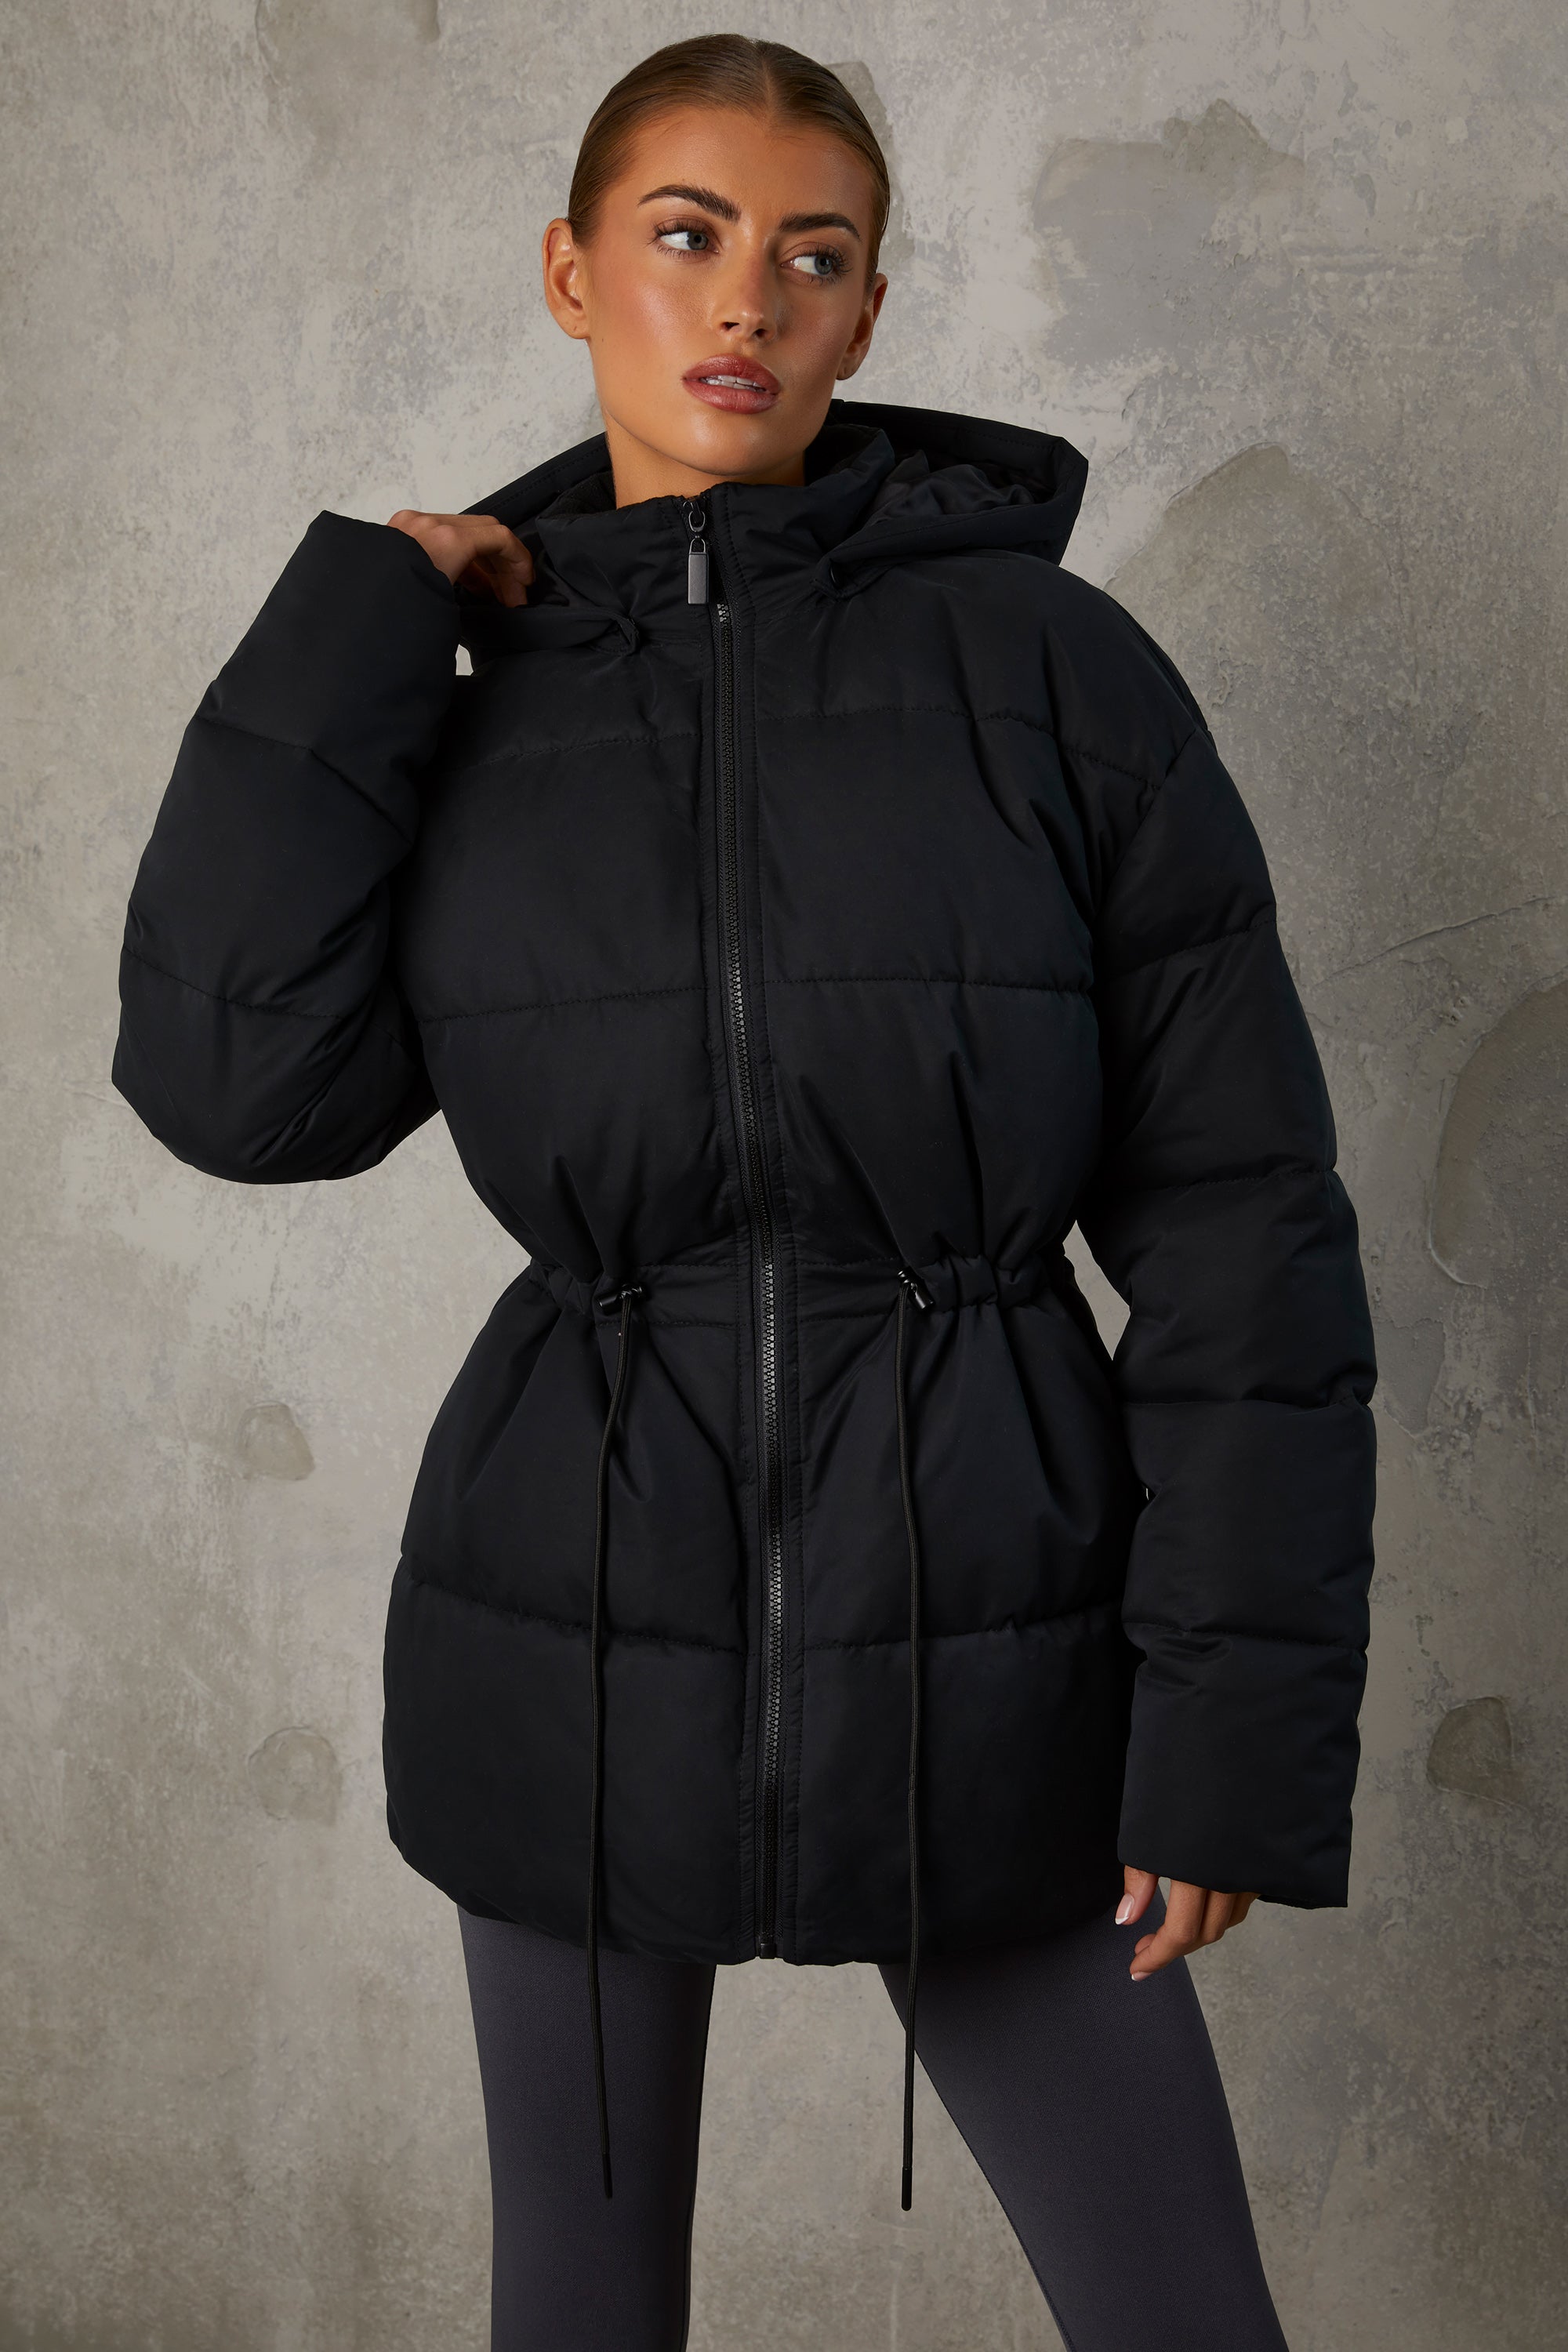 Hooded Puffer Jacket - Black - Ladies